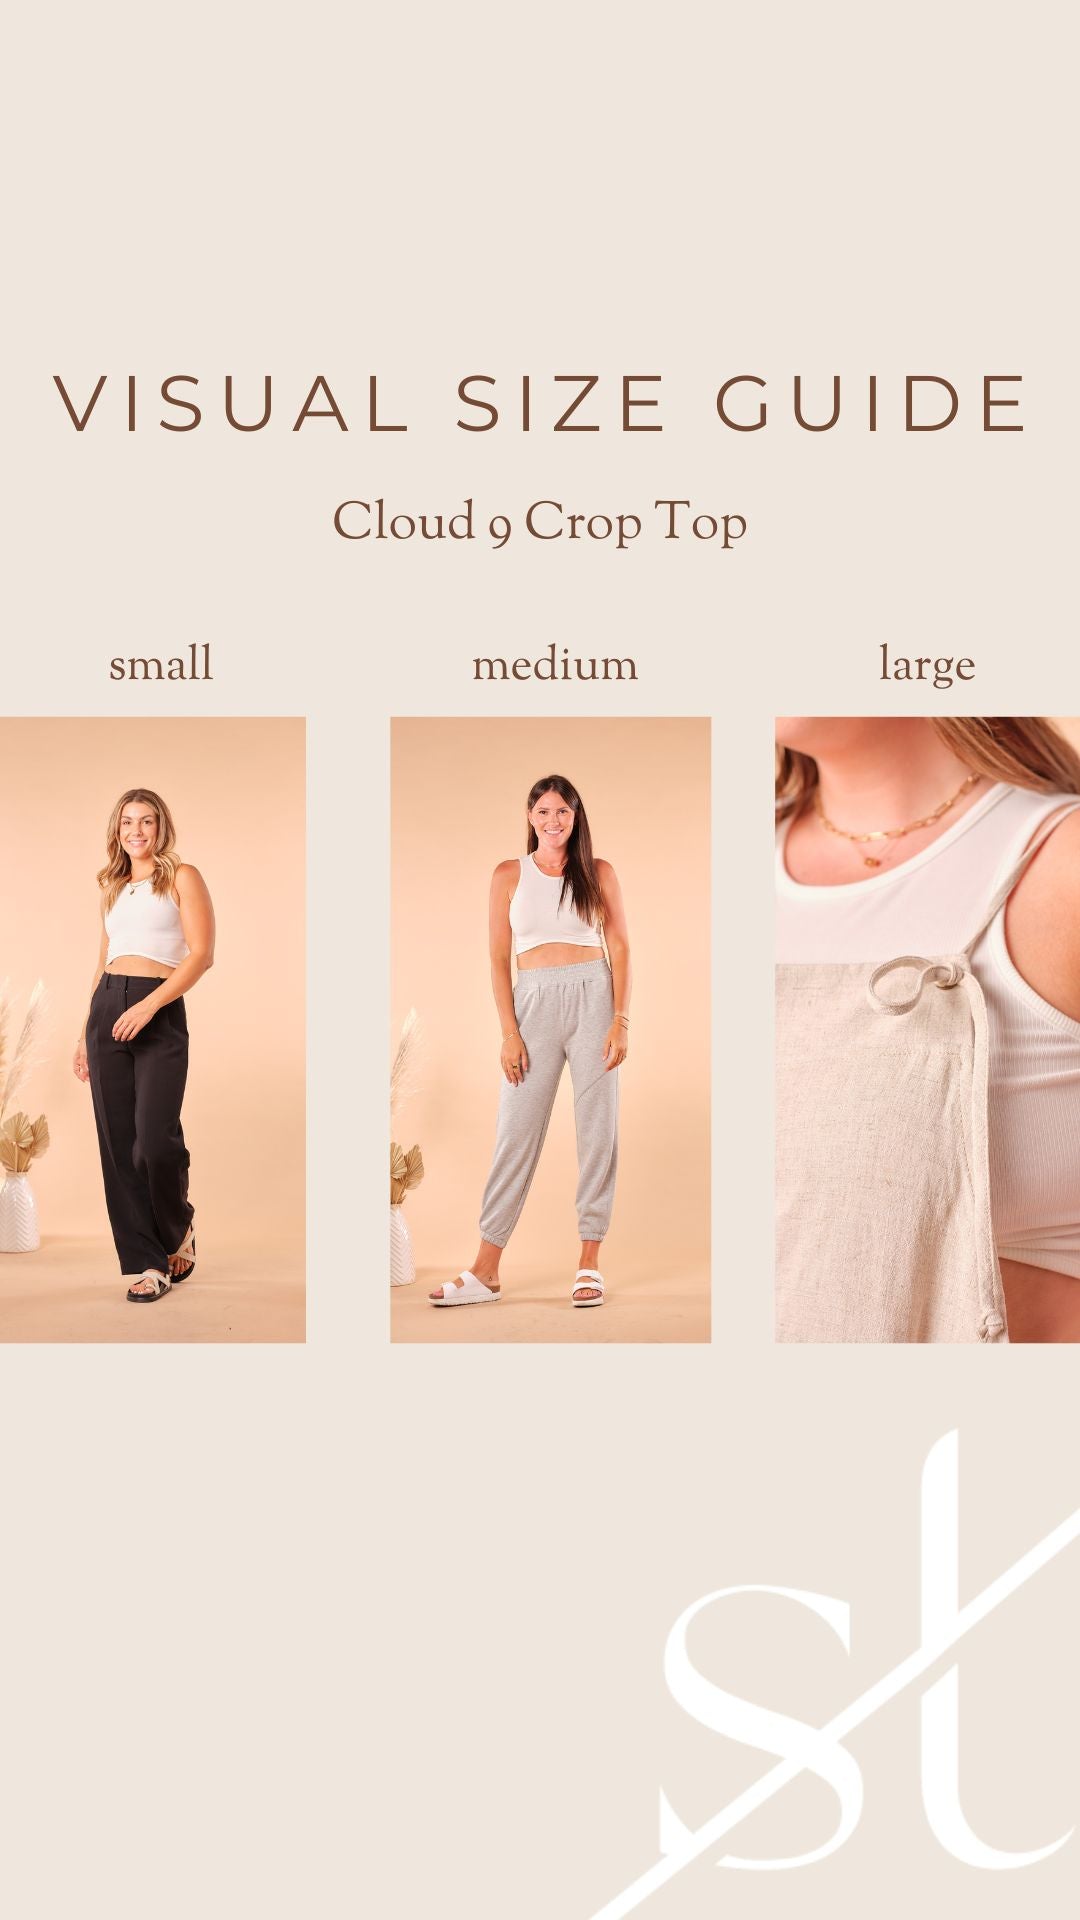 Cloud 9 Crop Top